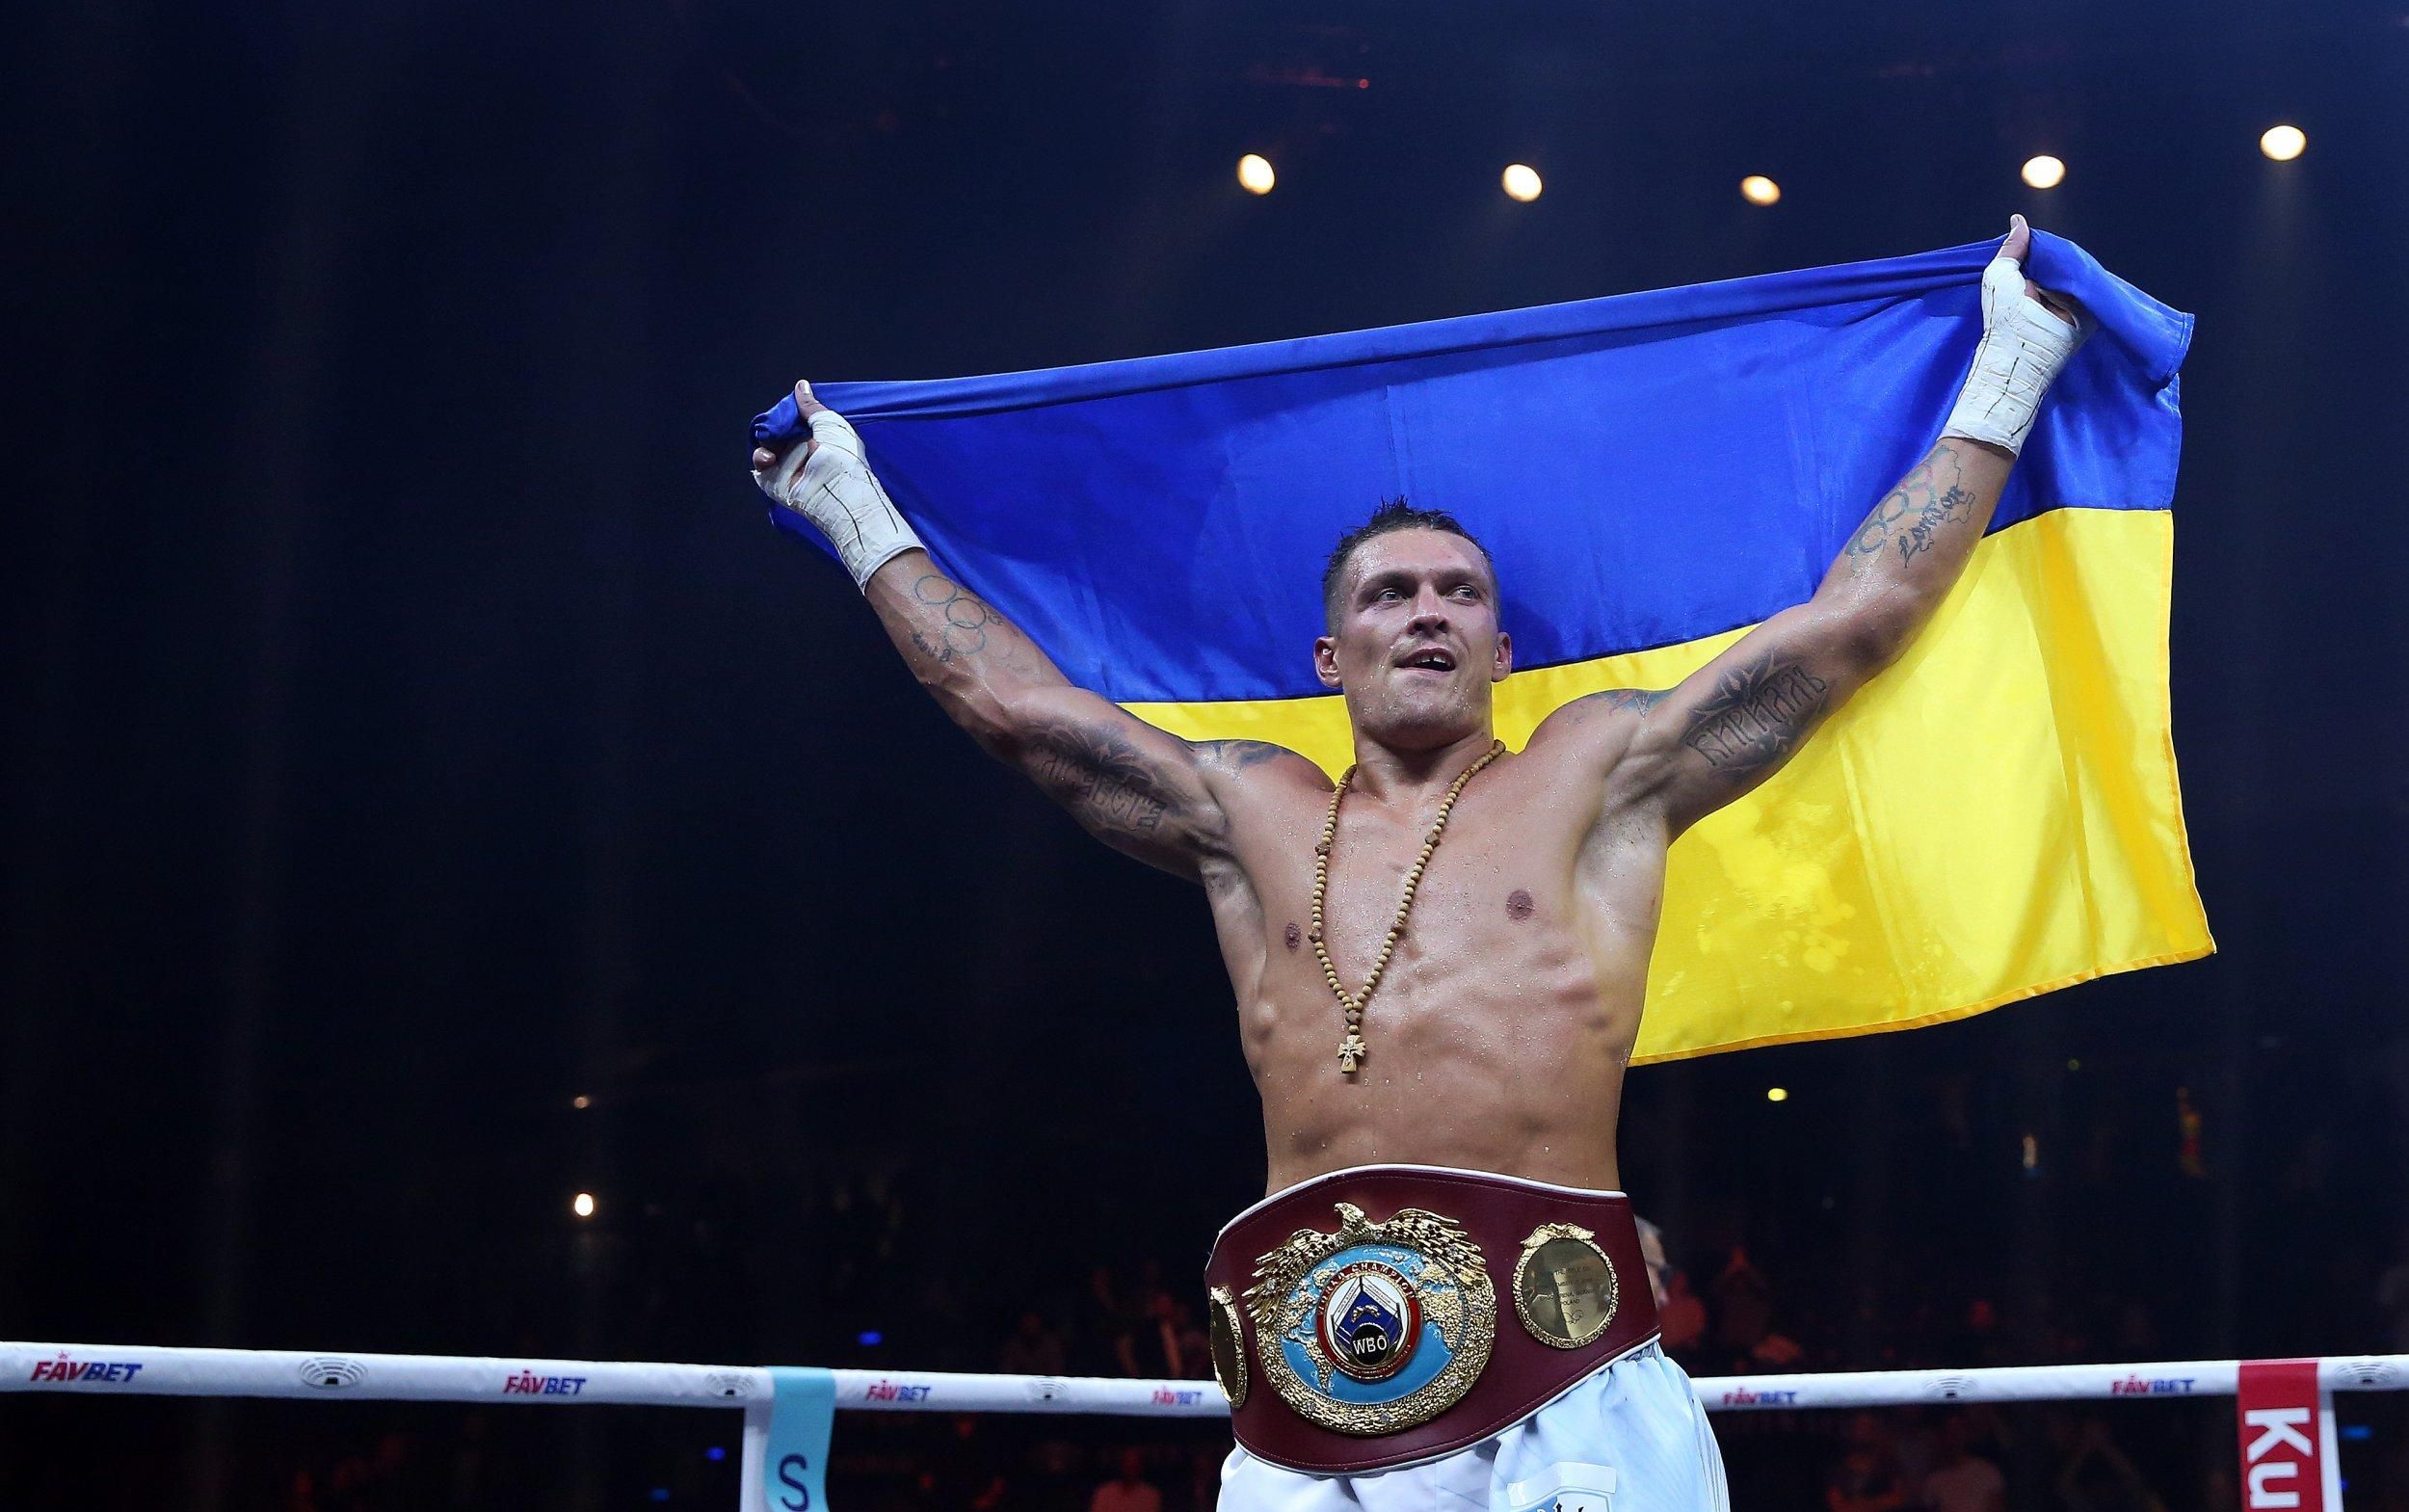 "Во время войны Саша проводить бои не будет": Усик не променяет защиту Украины на ринг - 24 канал Спорт